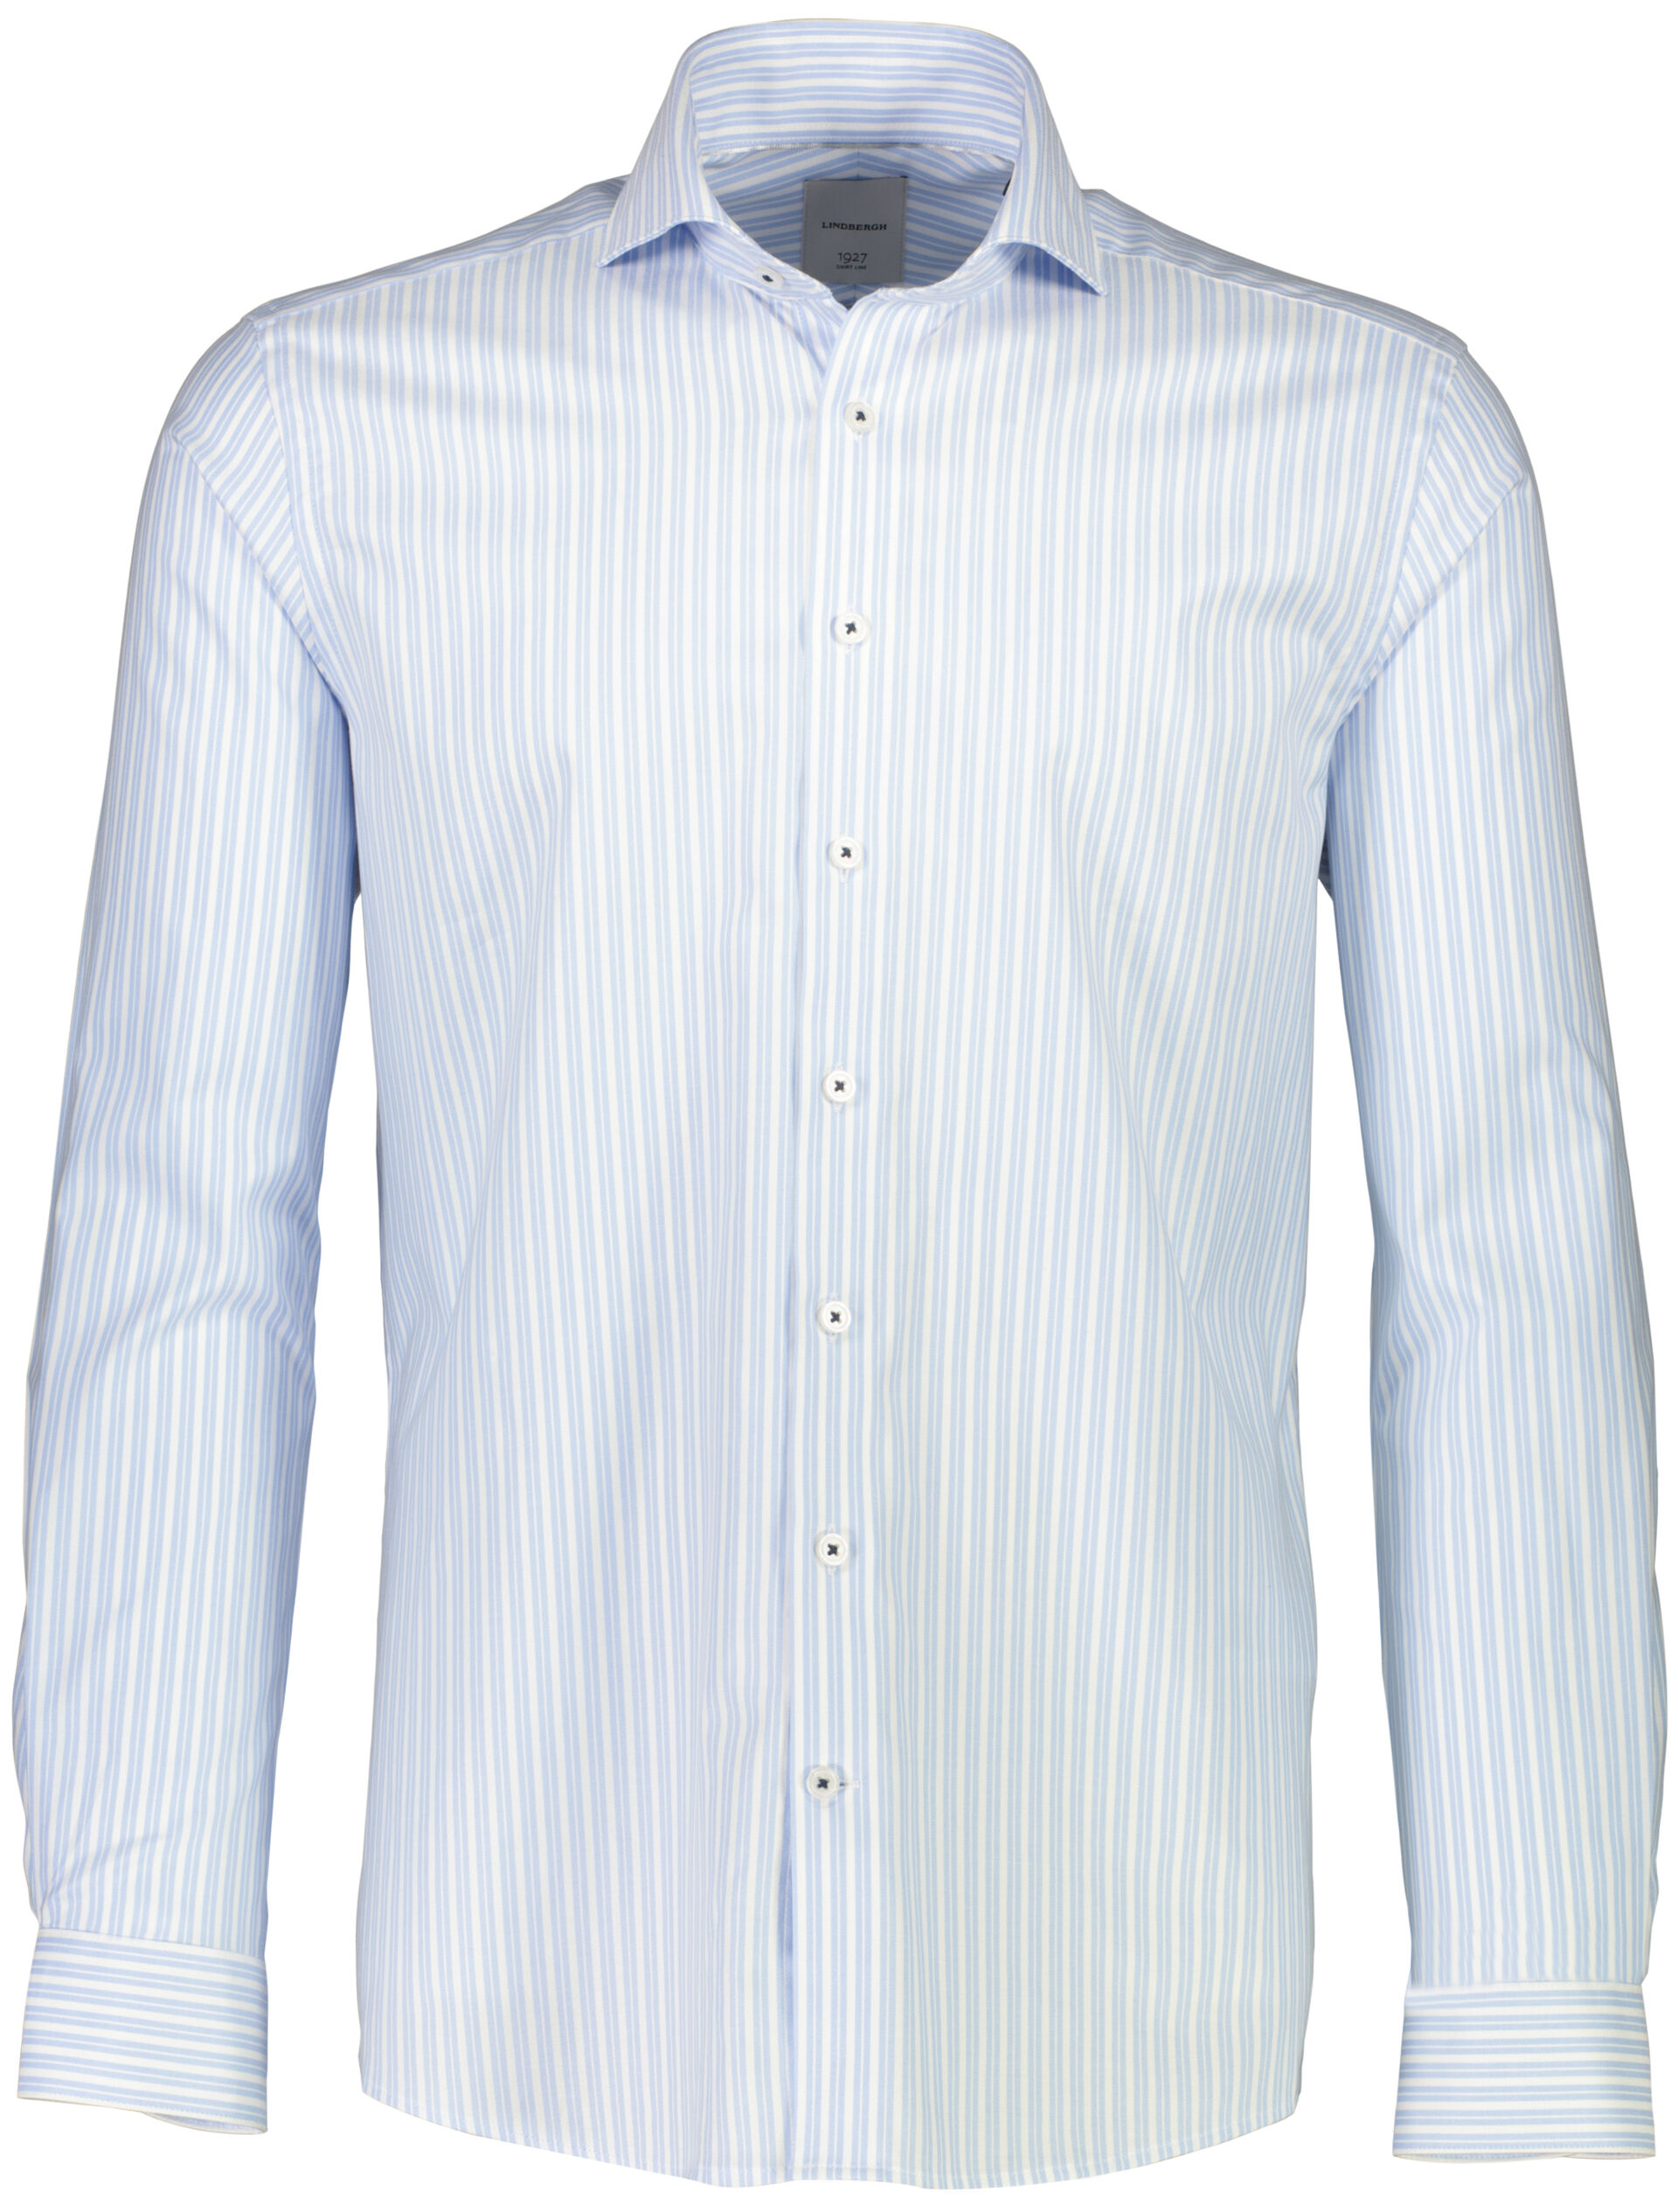 1927 Business shirt Business shirt Blue 30-247310